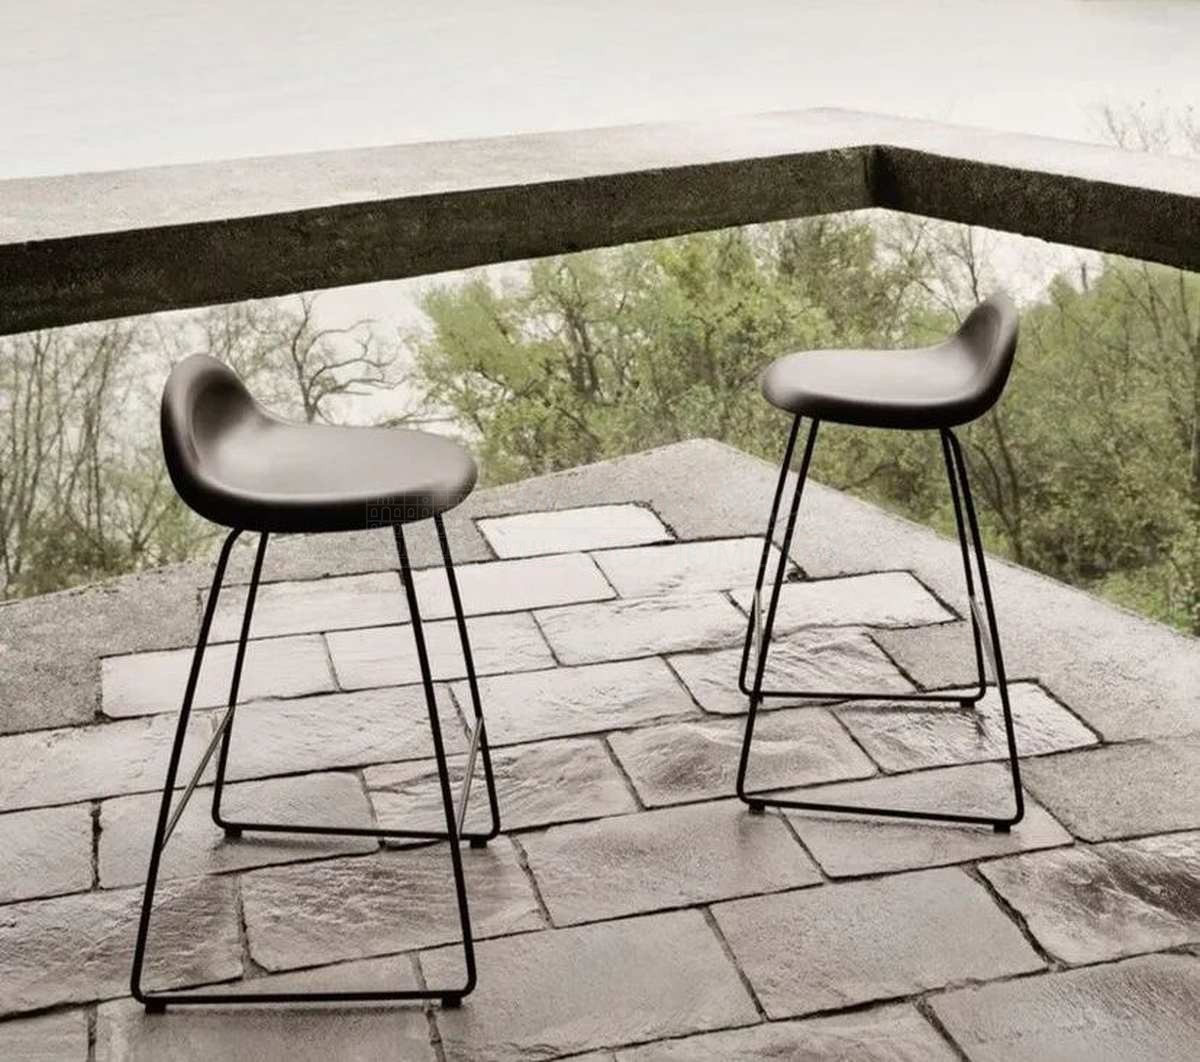 Полубарный стул 3D counter stool un-upholstered из Дании фабрики GUBI